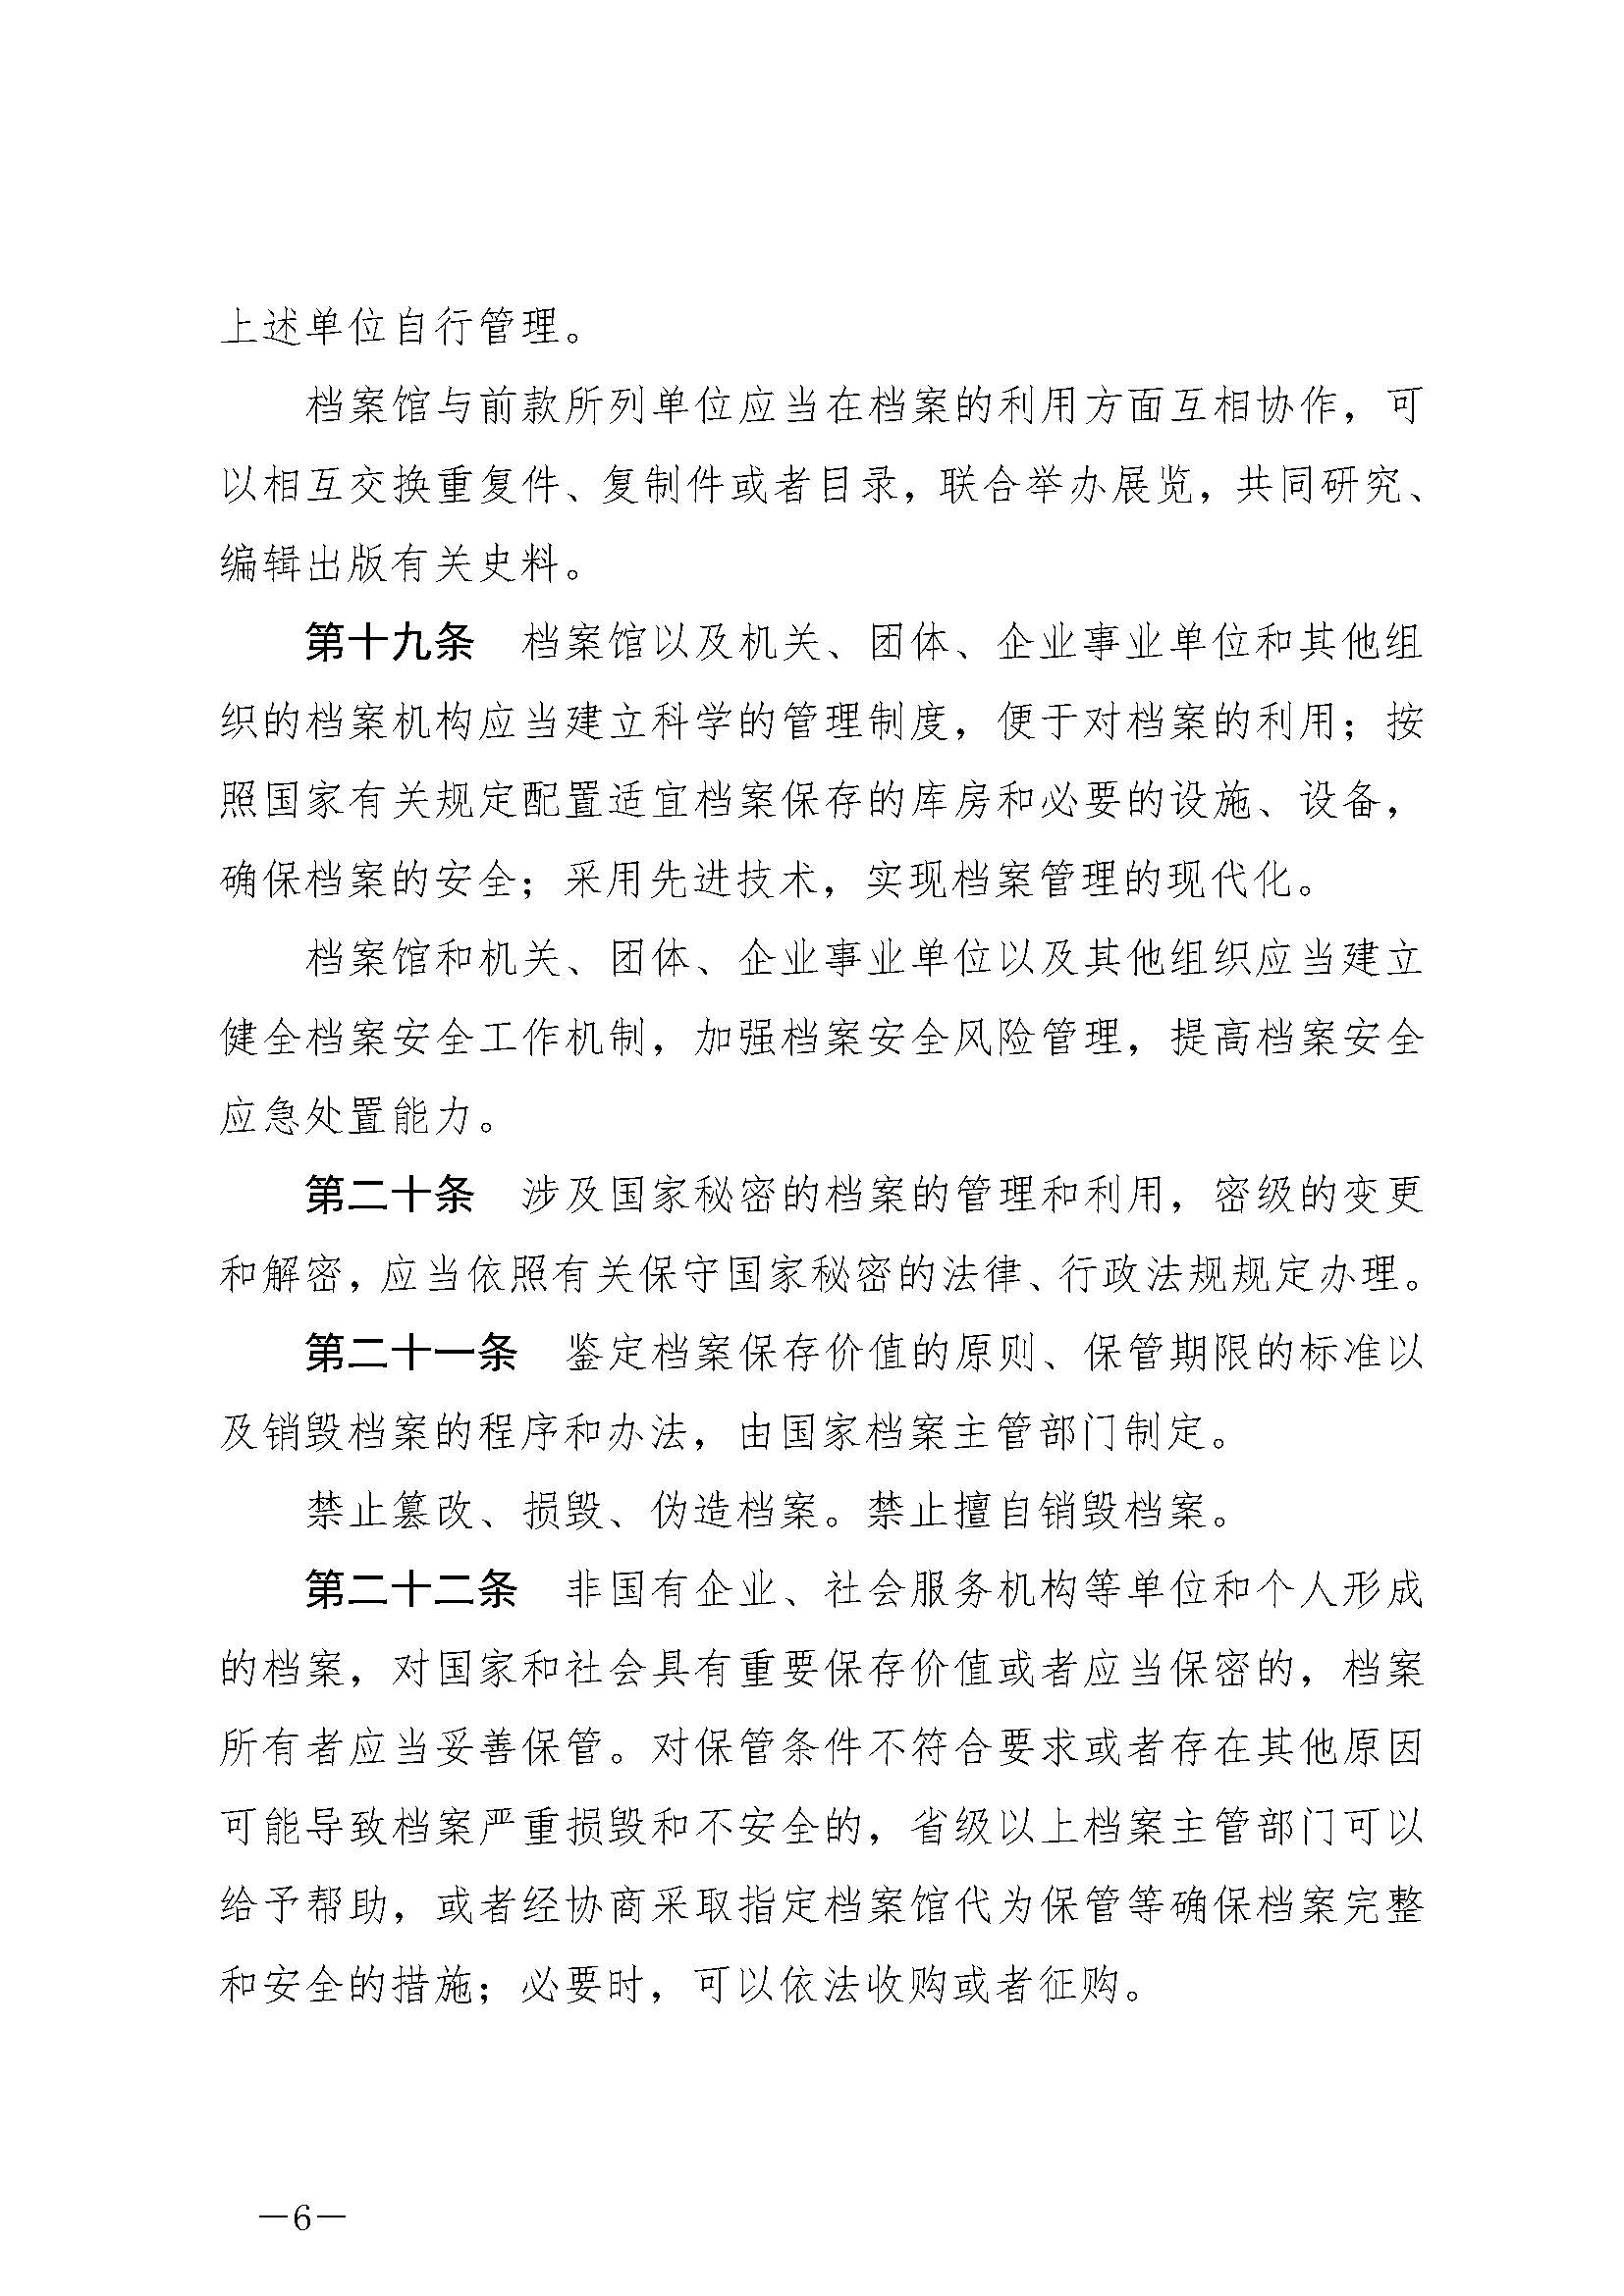 《中华人民共和国档案法》_页面_06.jpg